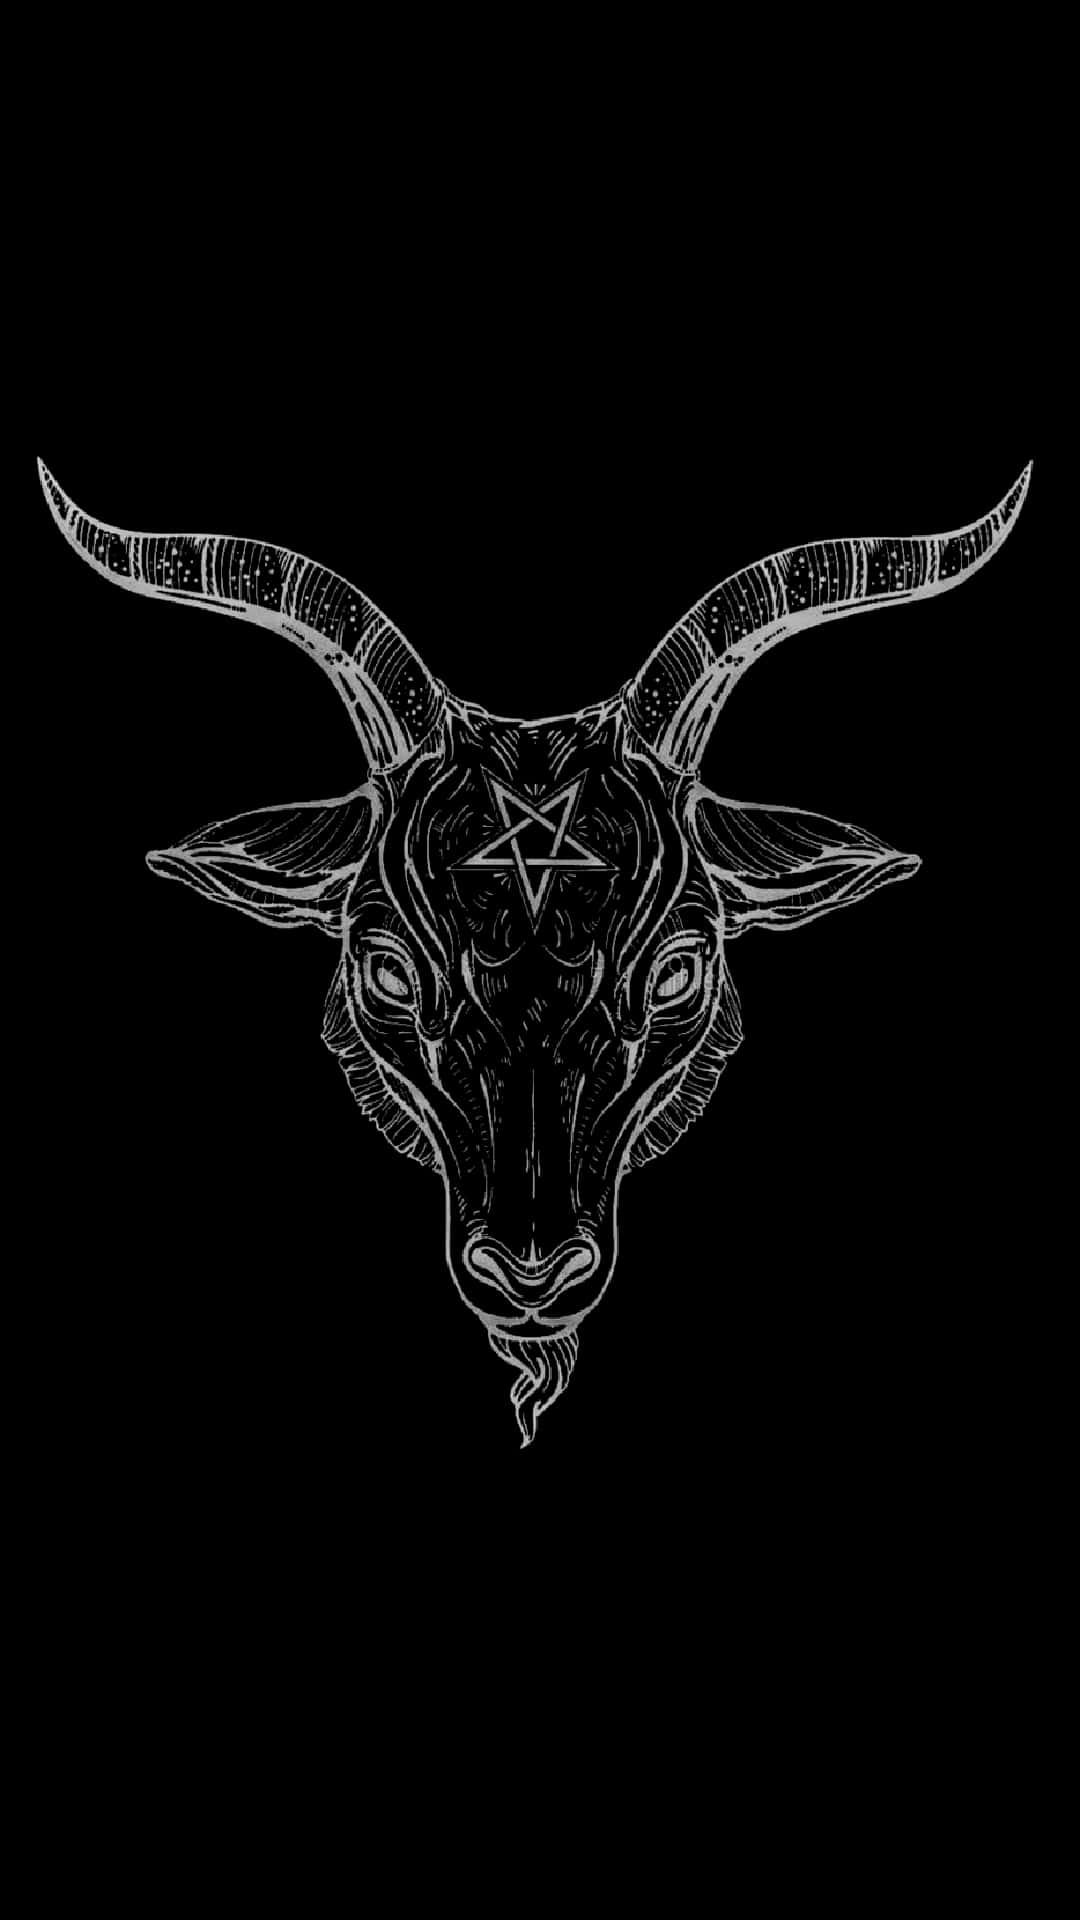 Edgy Black Aesthetic Goat Pentagram Wallpaper